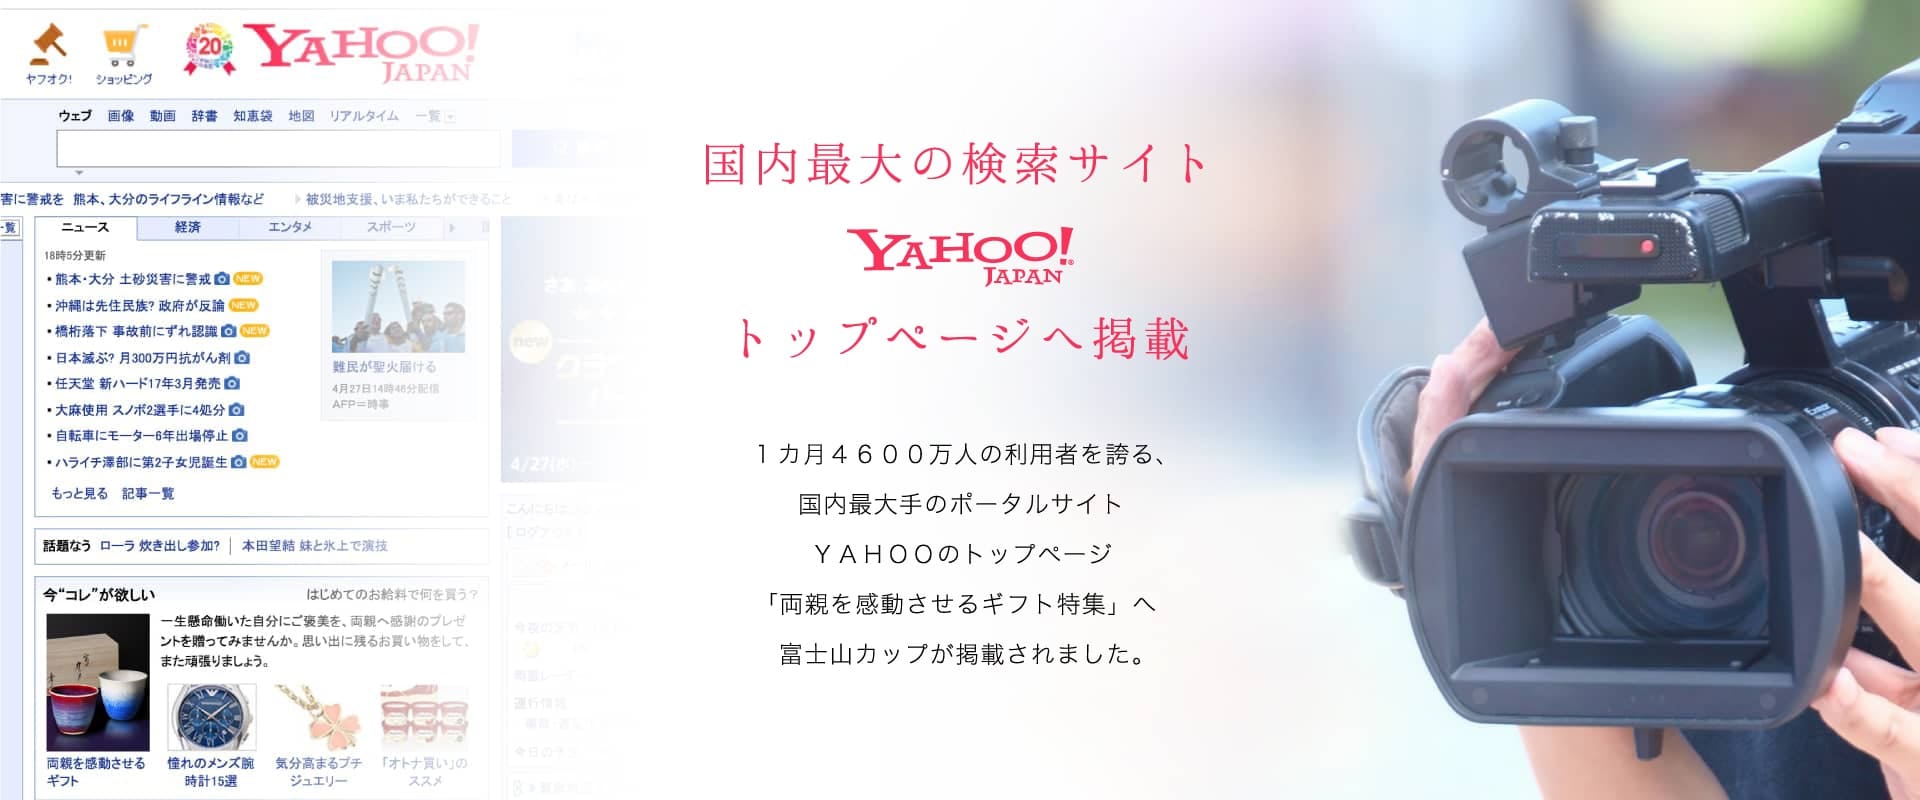 国内最大の検索サイト YAHOO！JAPANトップページへ掲載。1ヶ月4600万人の利用者を誇る、国内最大のポータルサイトYAHOOのトップページ「両親を感動させるギフト特集」へ富士山カップが掲載されました。